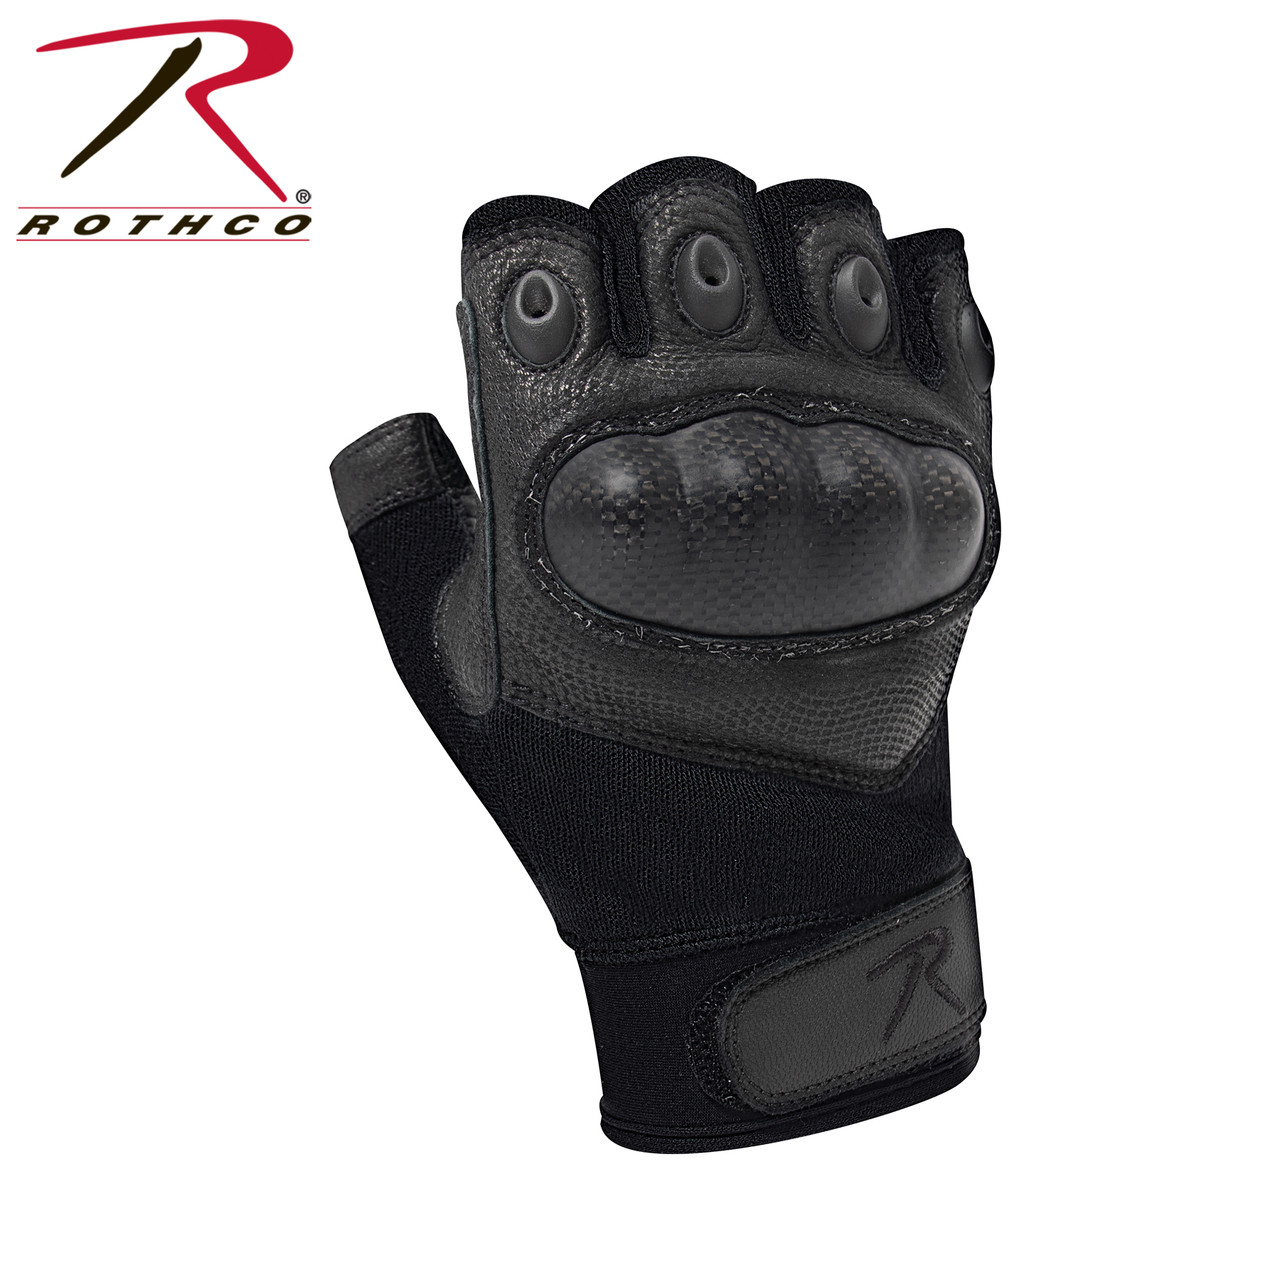 Rothco Fingerless Wool Gloves 